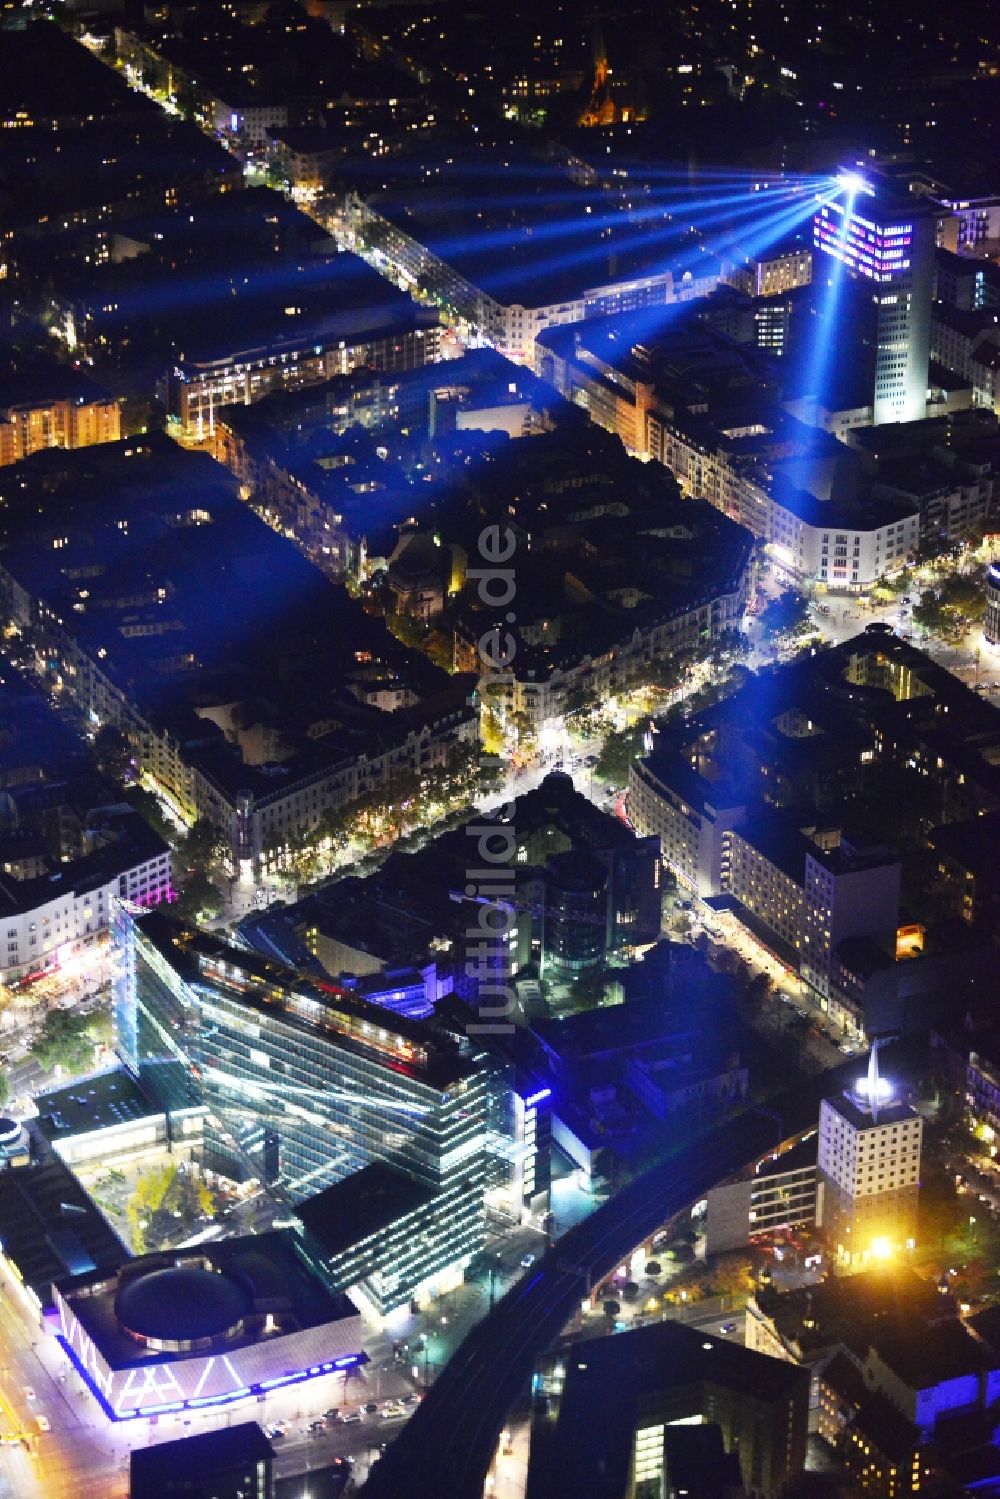 Nachtluftbild Berlin - Nachtluftbild von illuminierten Gebäuden in der City West während des Festival Of Light in Berlin Charlottenburg